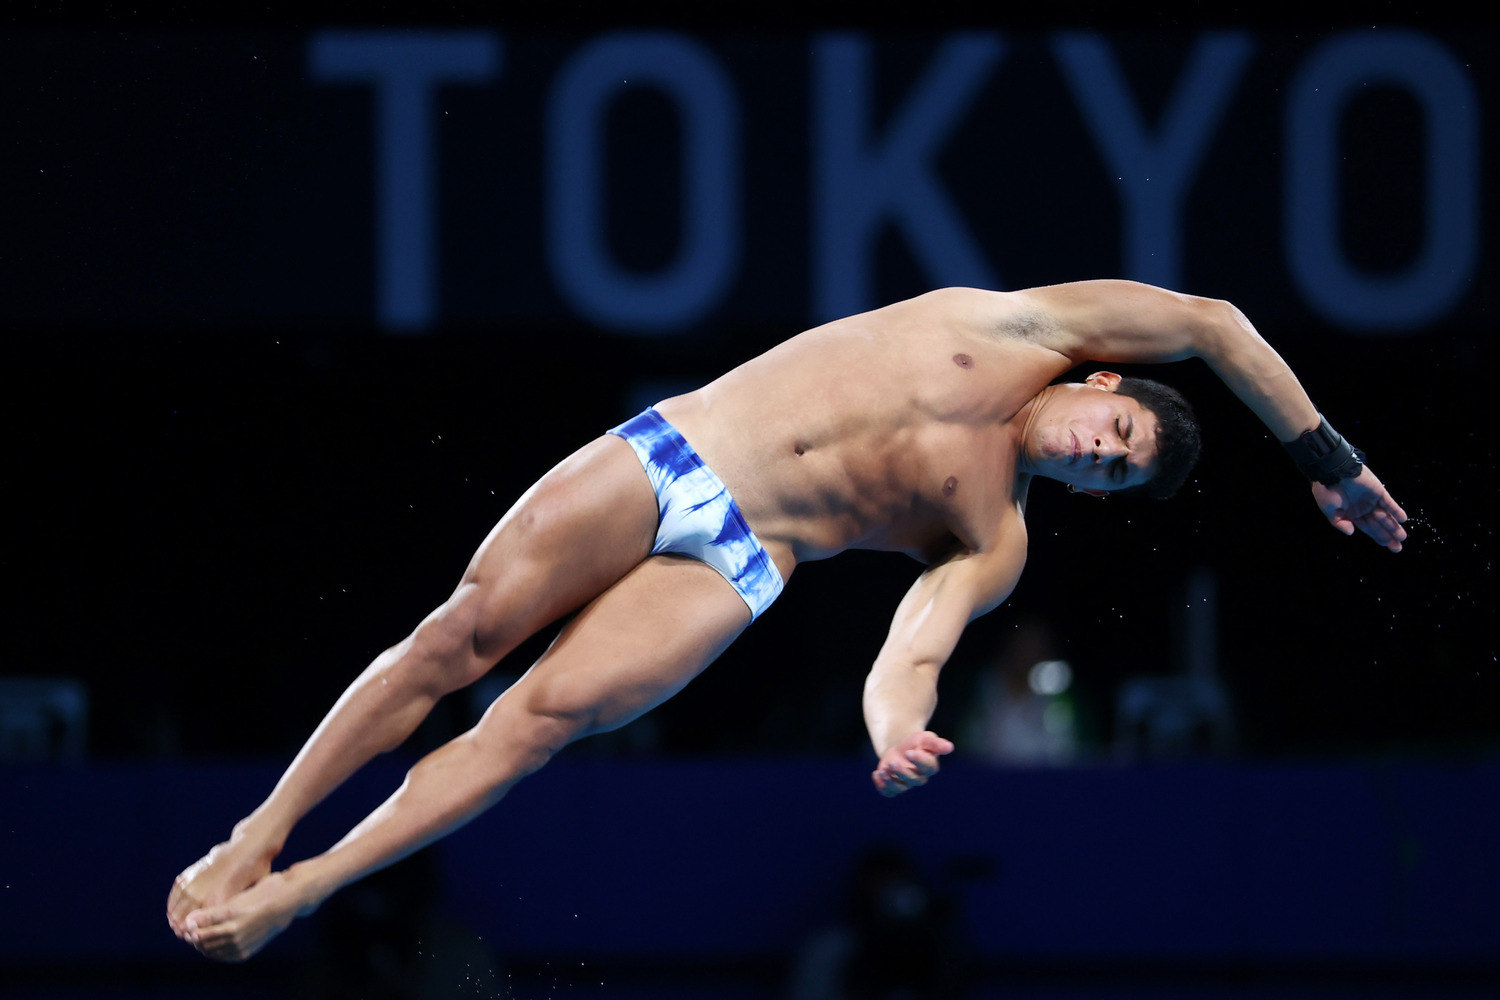 Kawan Pereira, o piauiense que fez 'bonito de se ver' nas Olimpíadas de Tóquio